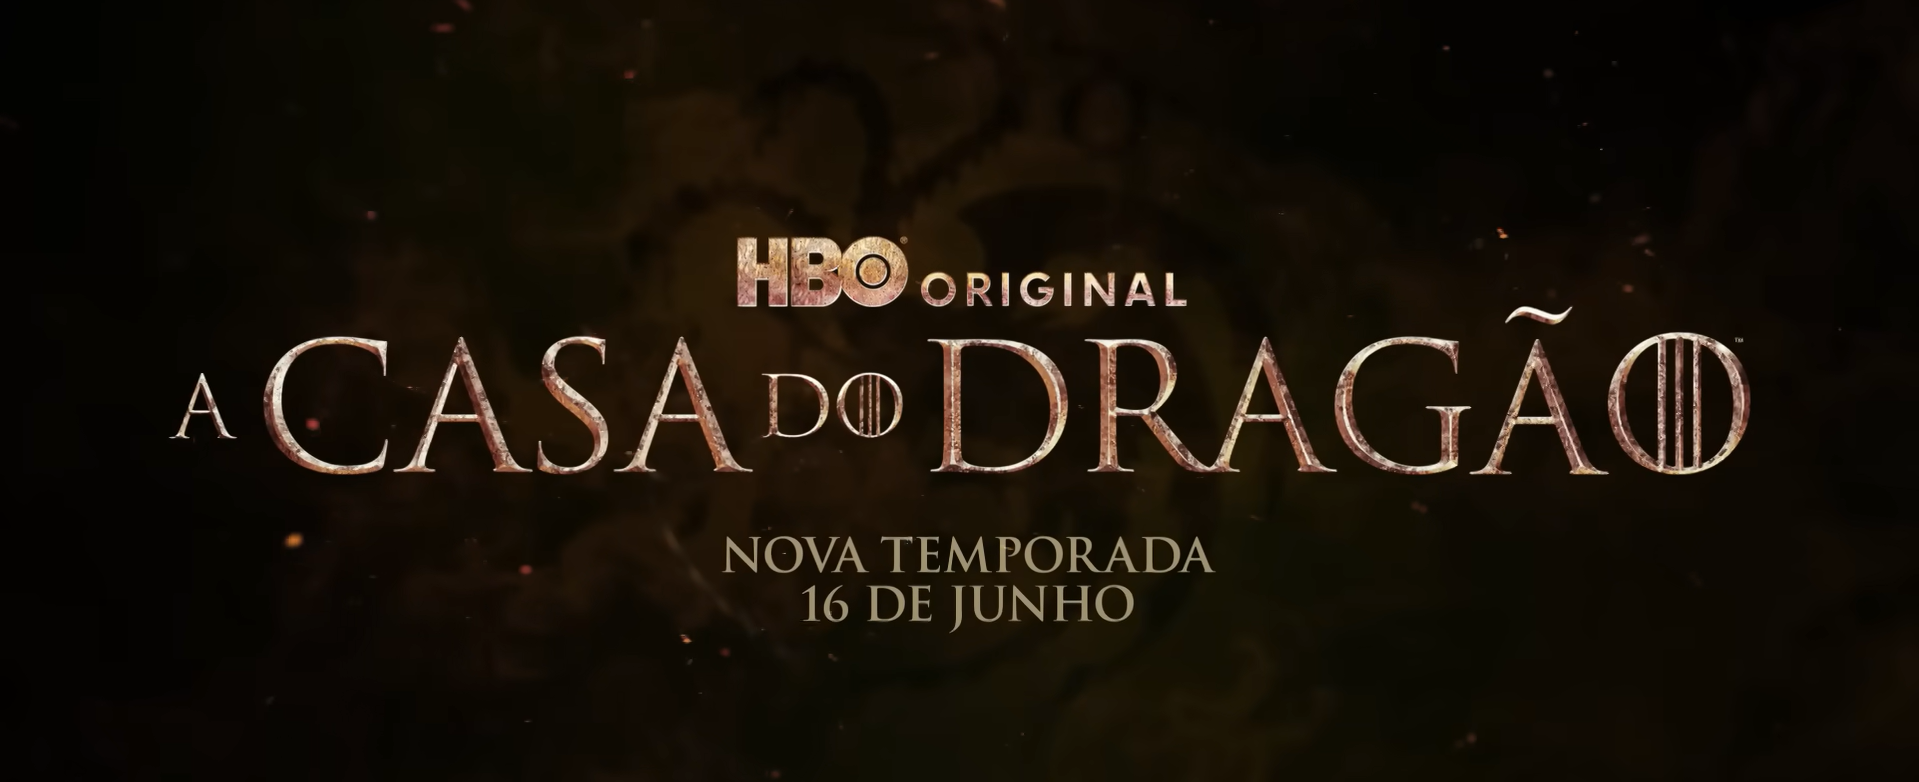 Pôster oficial, com data de lançamento, da segunda temporada de A Casa do Dragão.